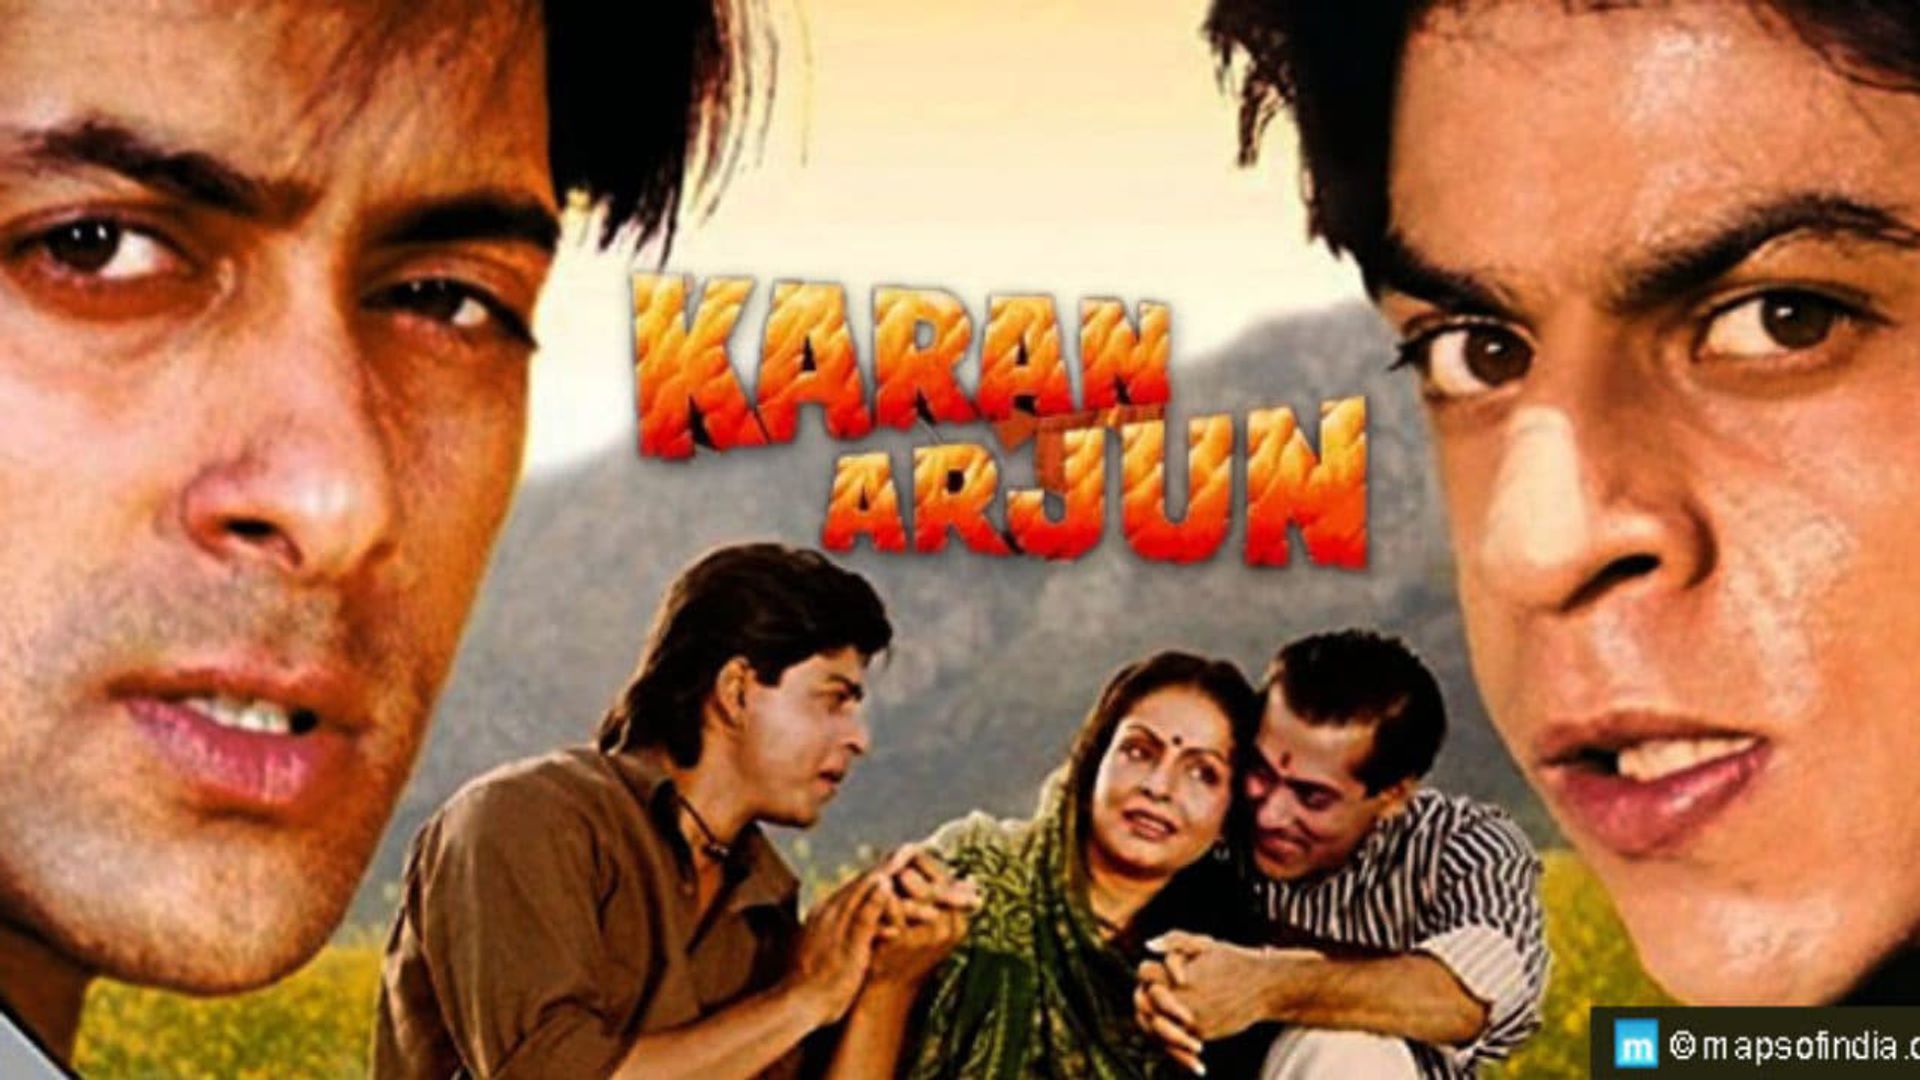 Karan Arjun Backdrop